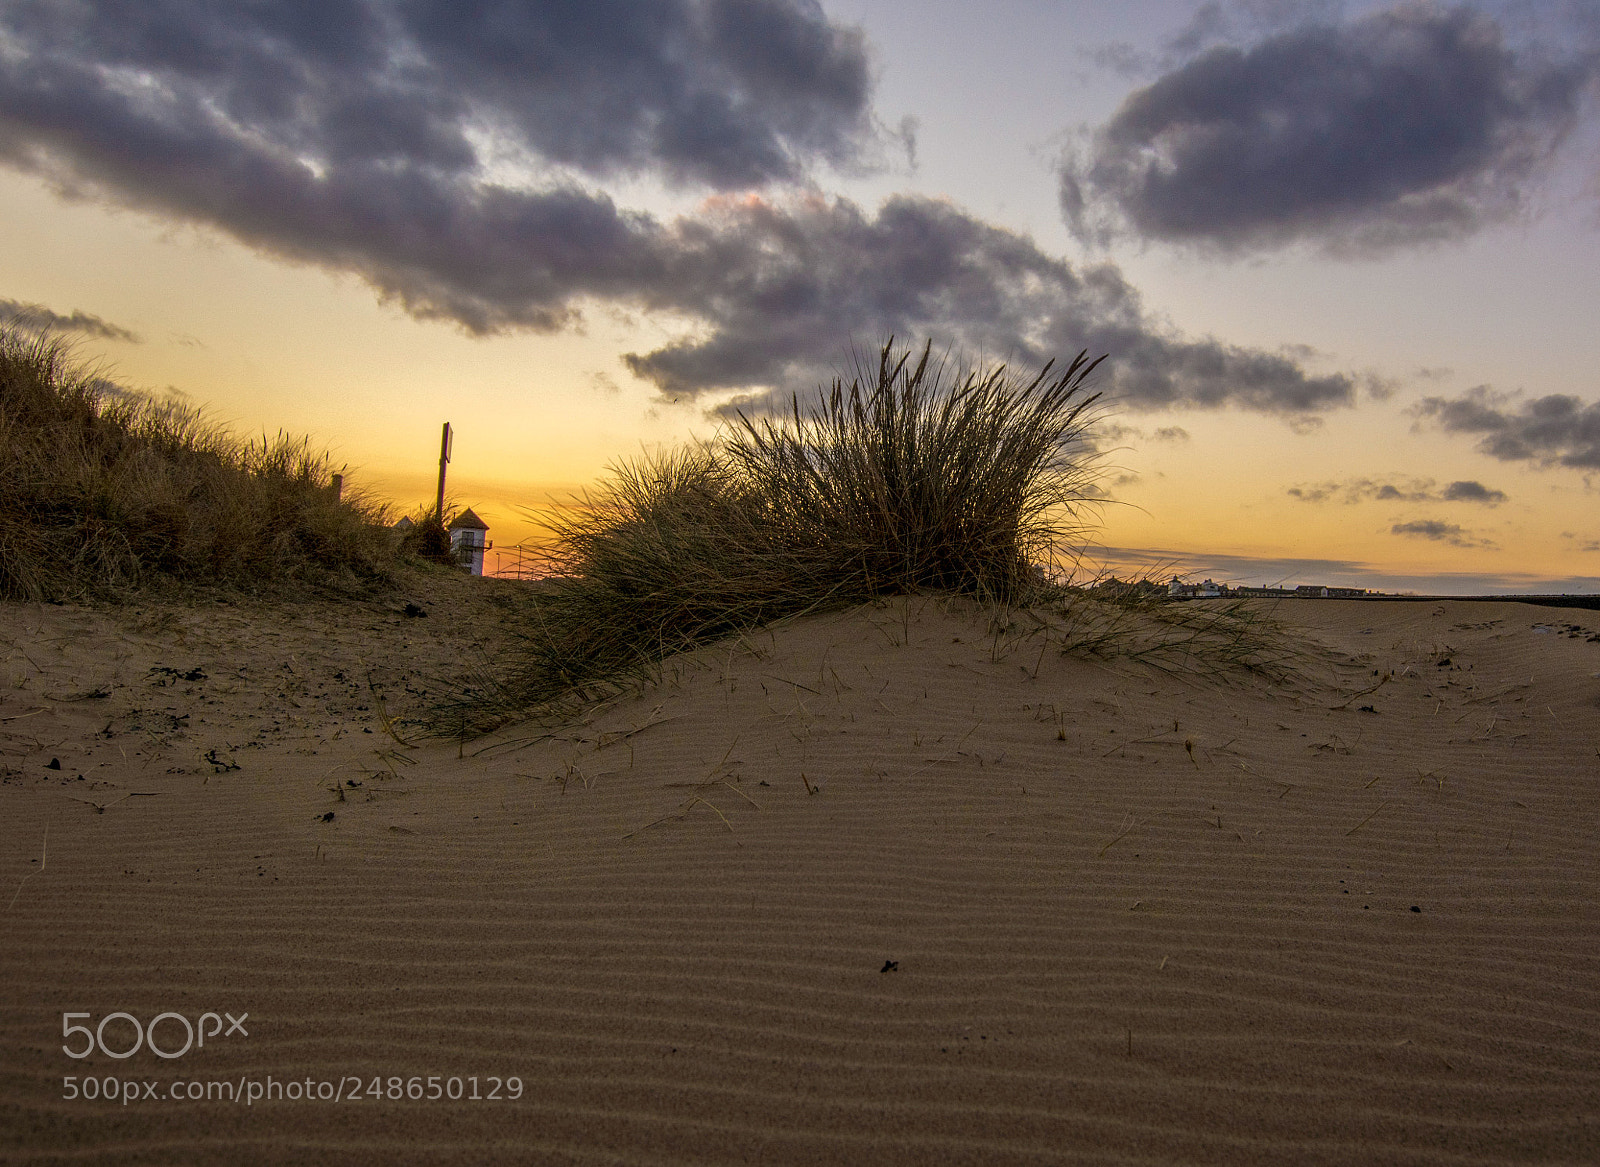 Nikon D5200 sample photo. Sand dunes at sunset photography